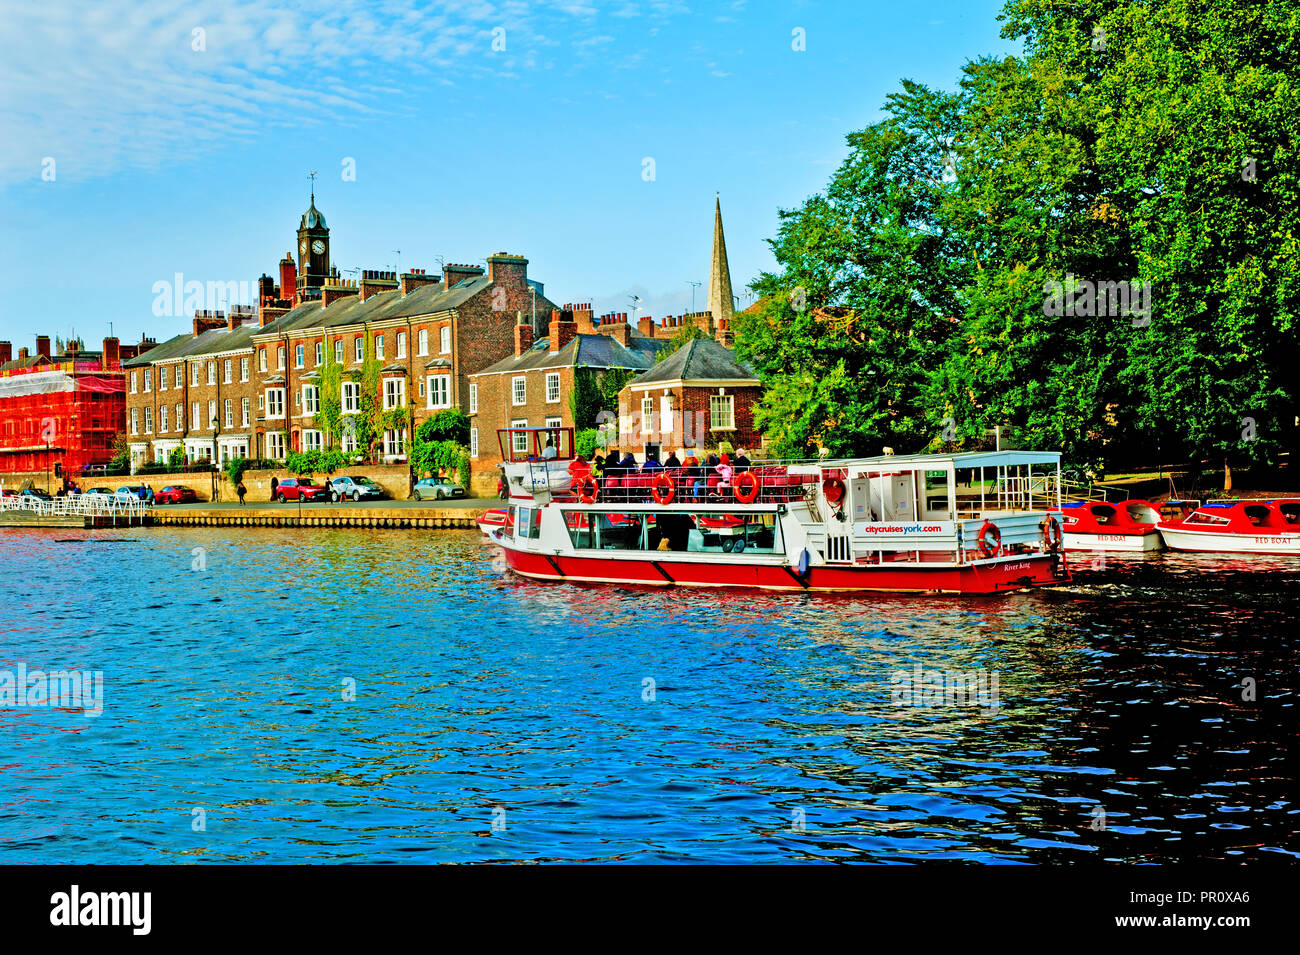 Tourboat et bateaux rouges, rivière Ouse, Kings Staithes, York, Angleterre Banque D'Images